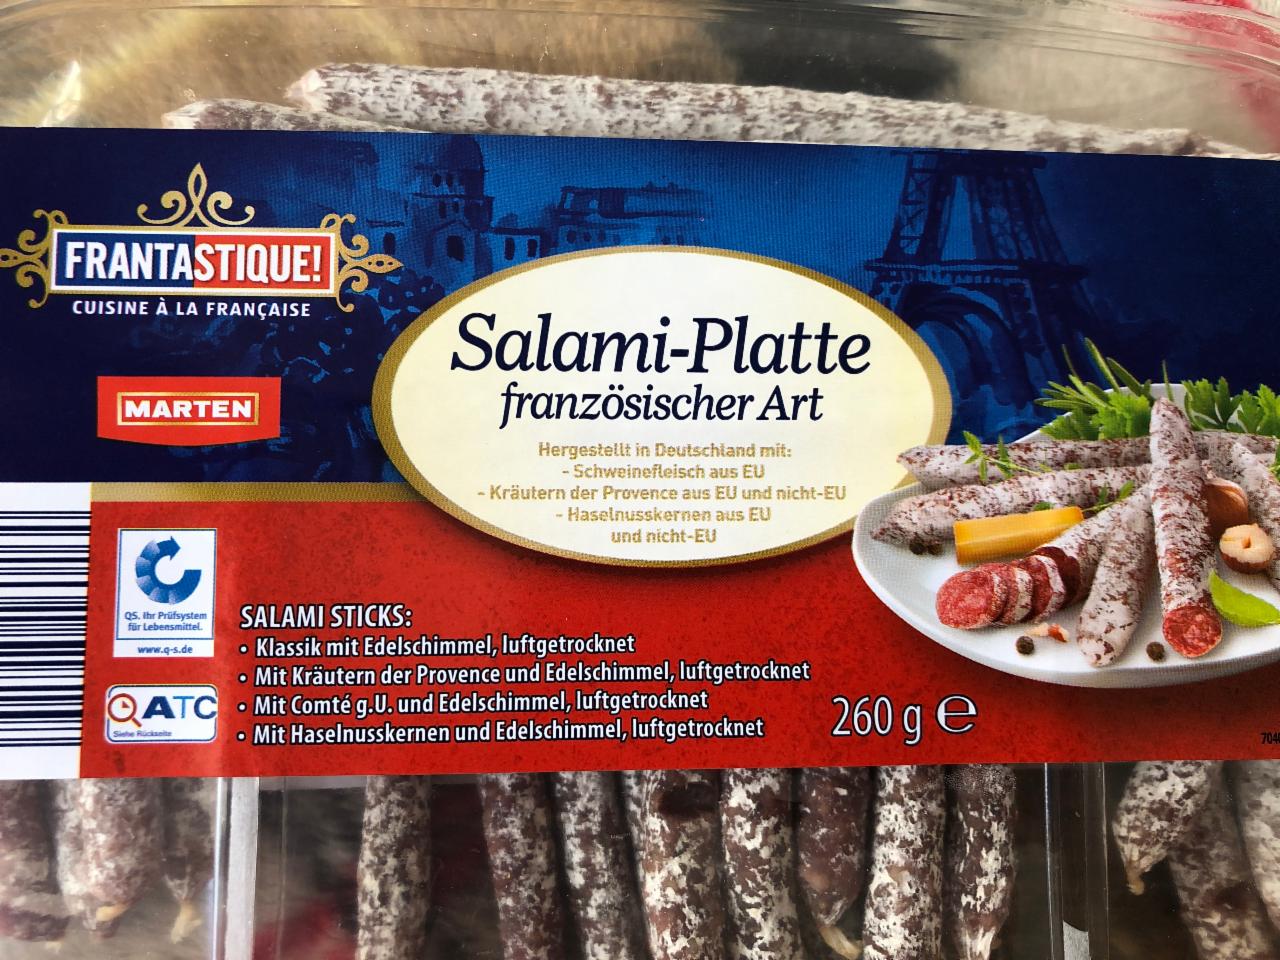 Fotografie - Salami-Platte französischer Art salami Sticks Klassik Frantastique!